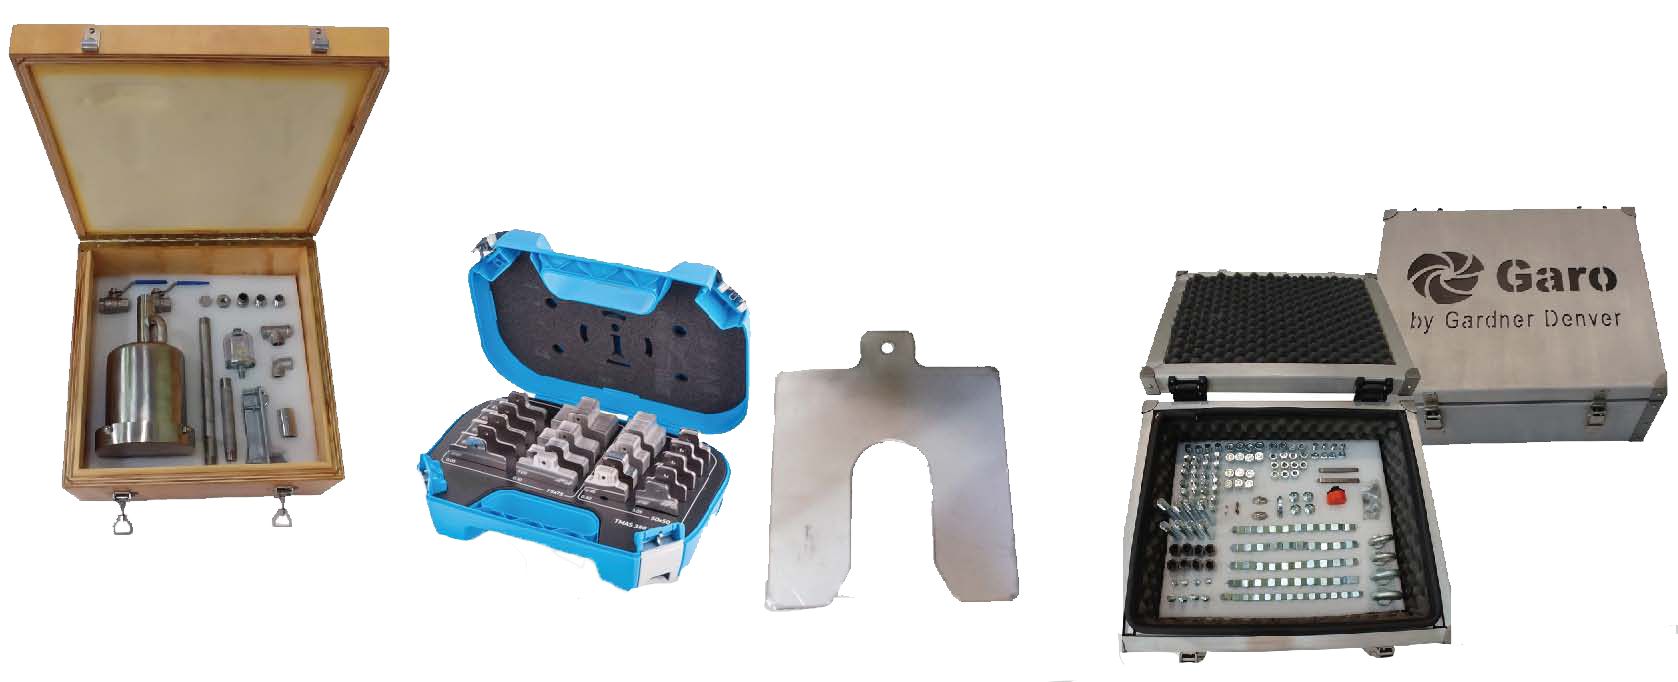 GARO OEM Tool Kits for Liquid Ring Compressor Maintenance and Repair 